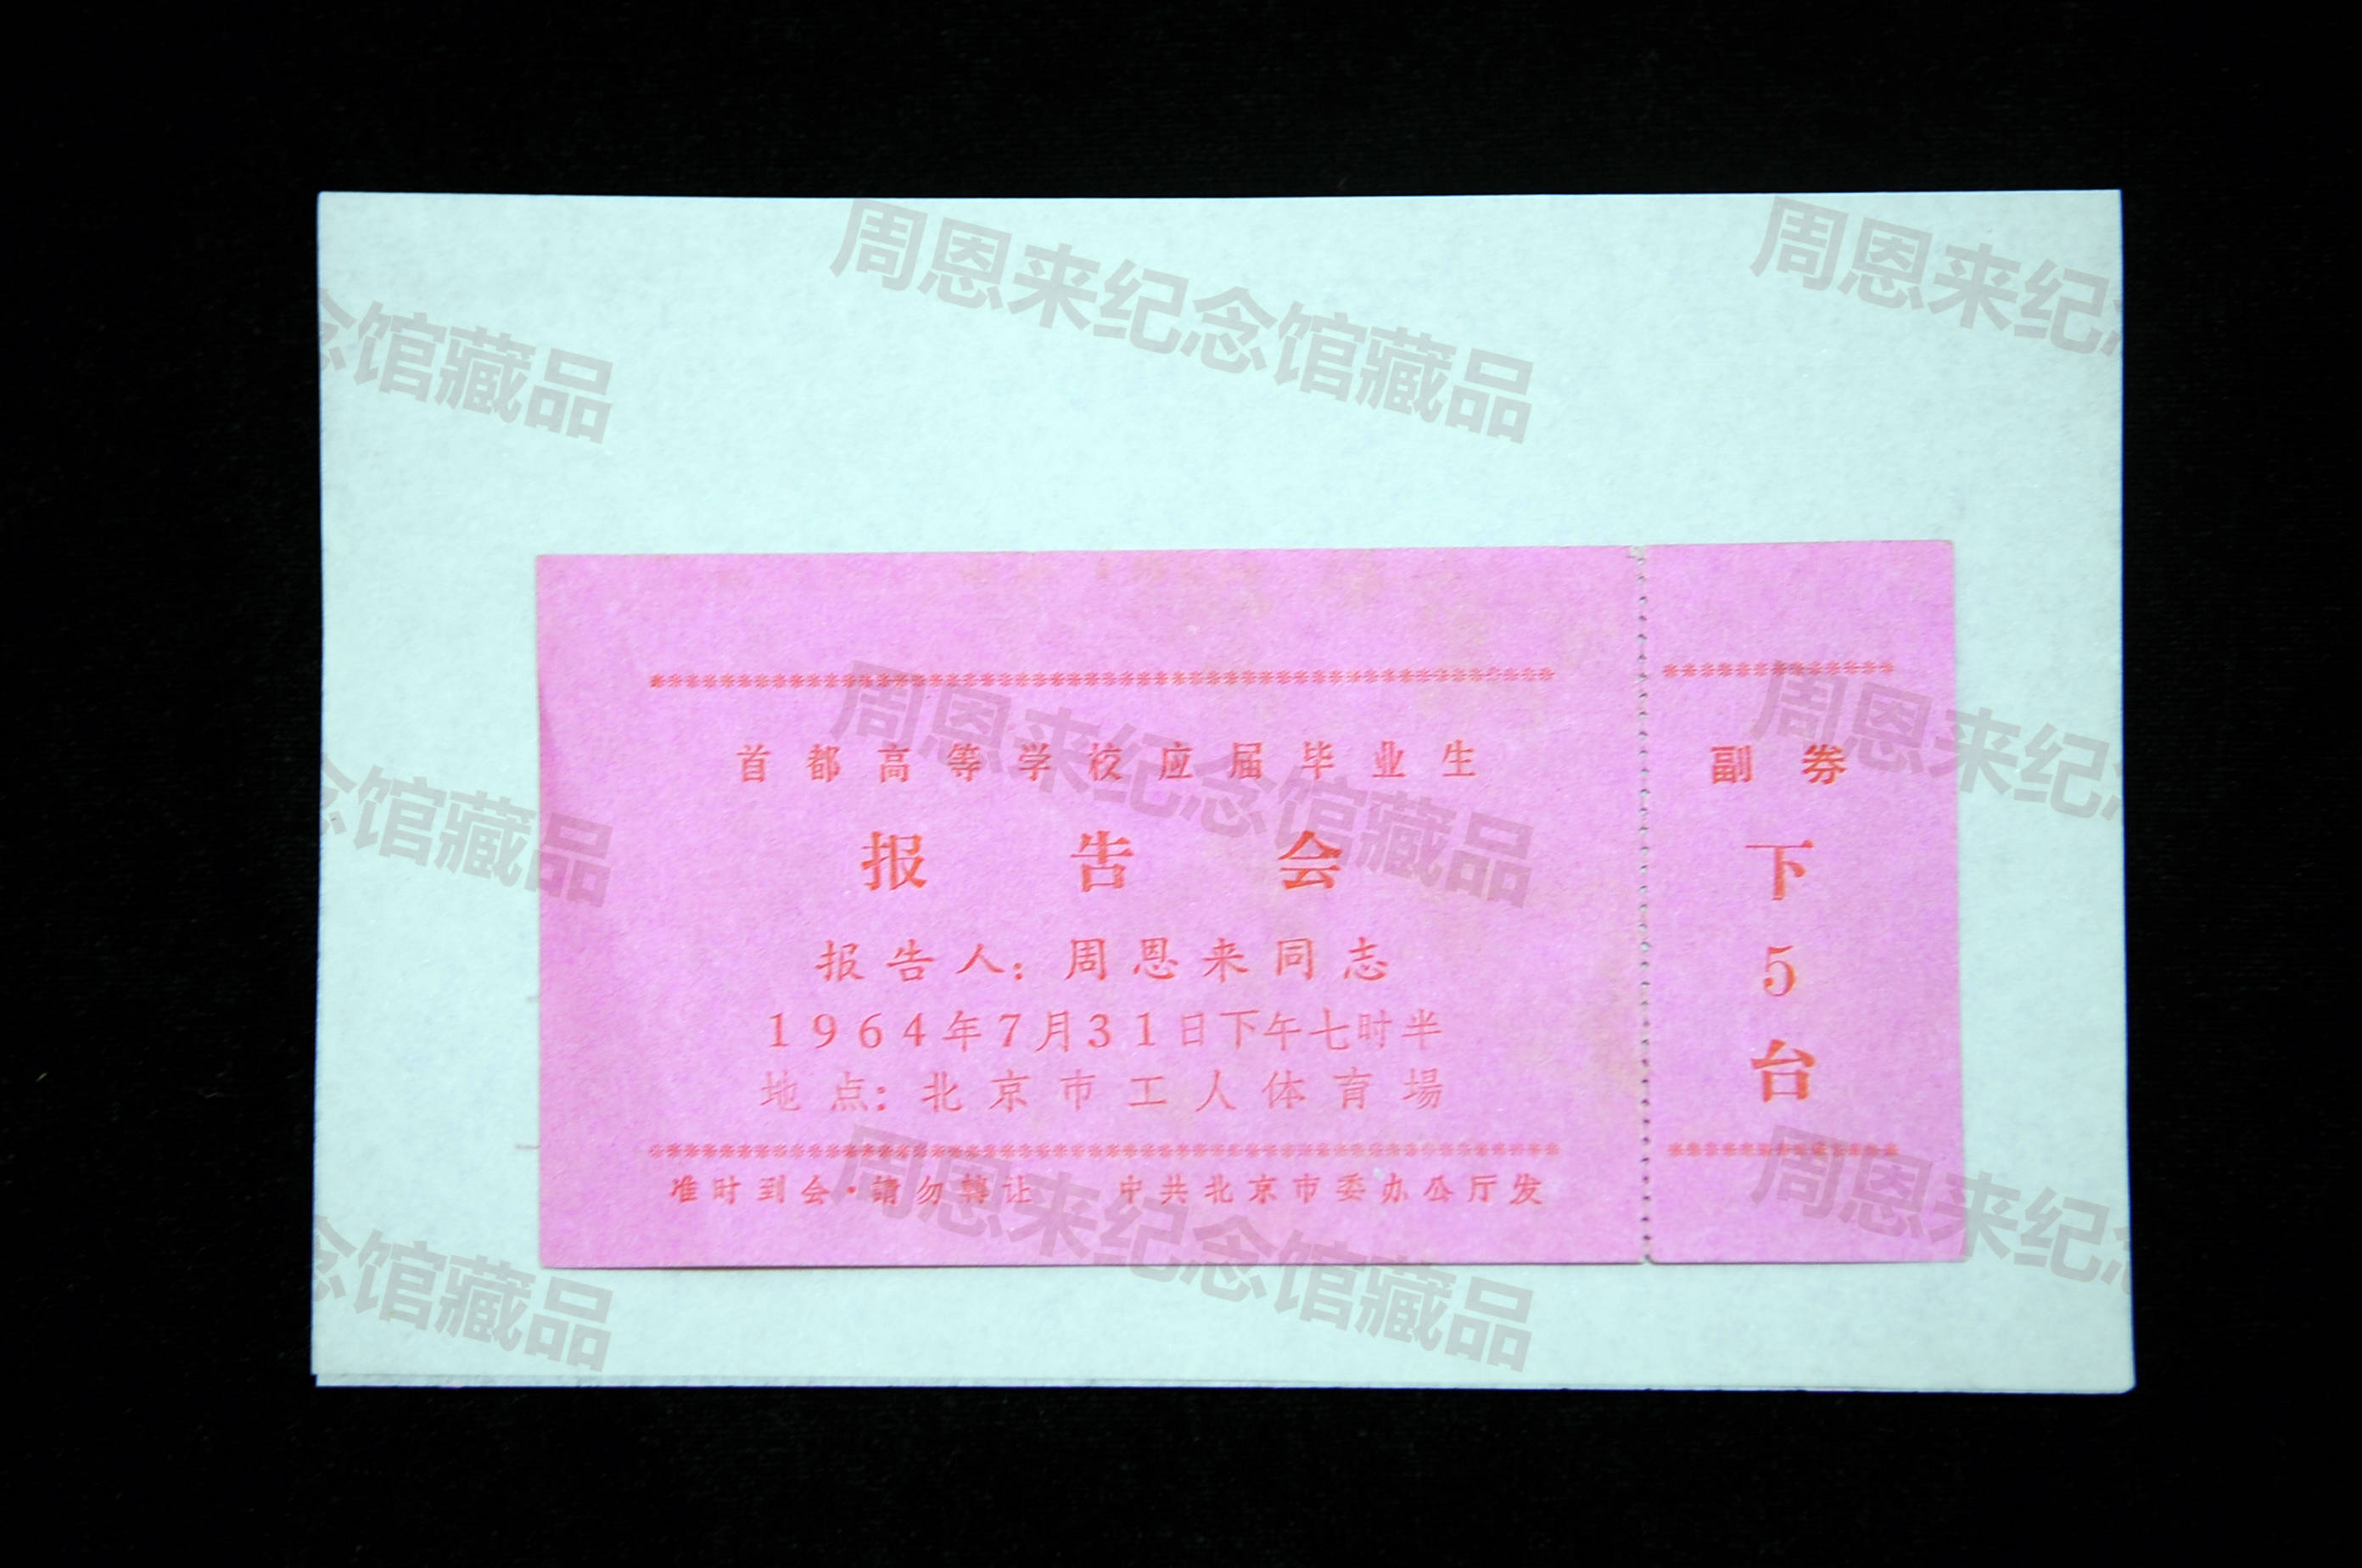 W231 1964年7月31日周恩来报告会入场券.JPG